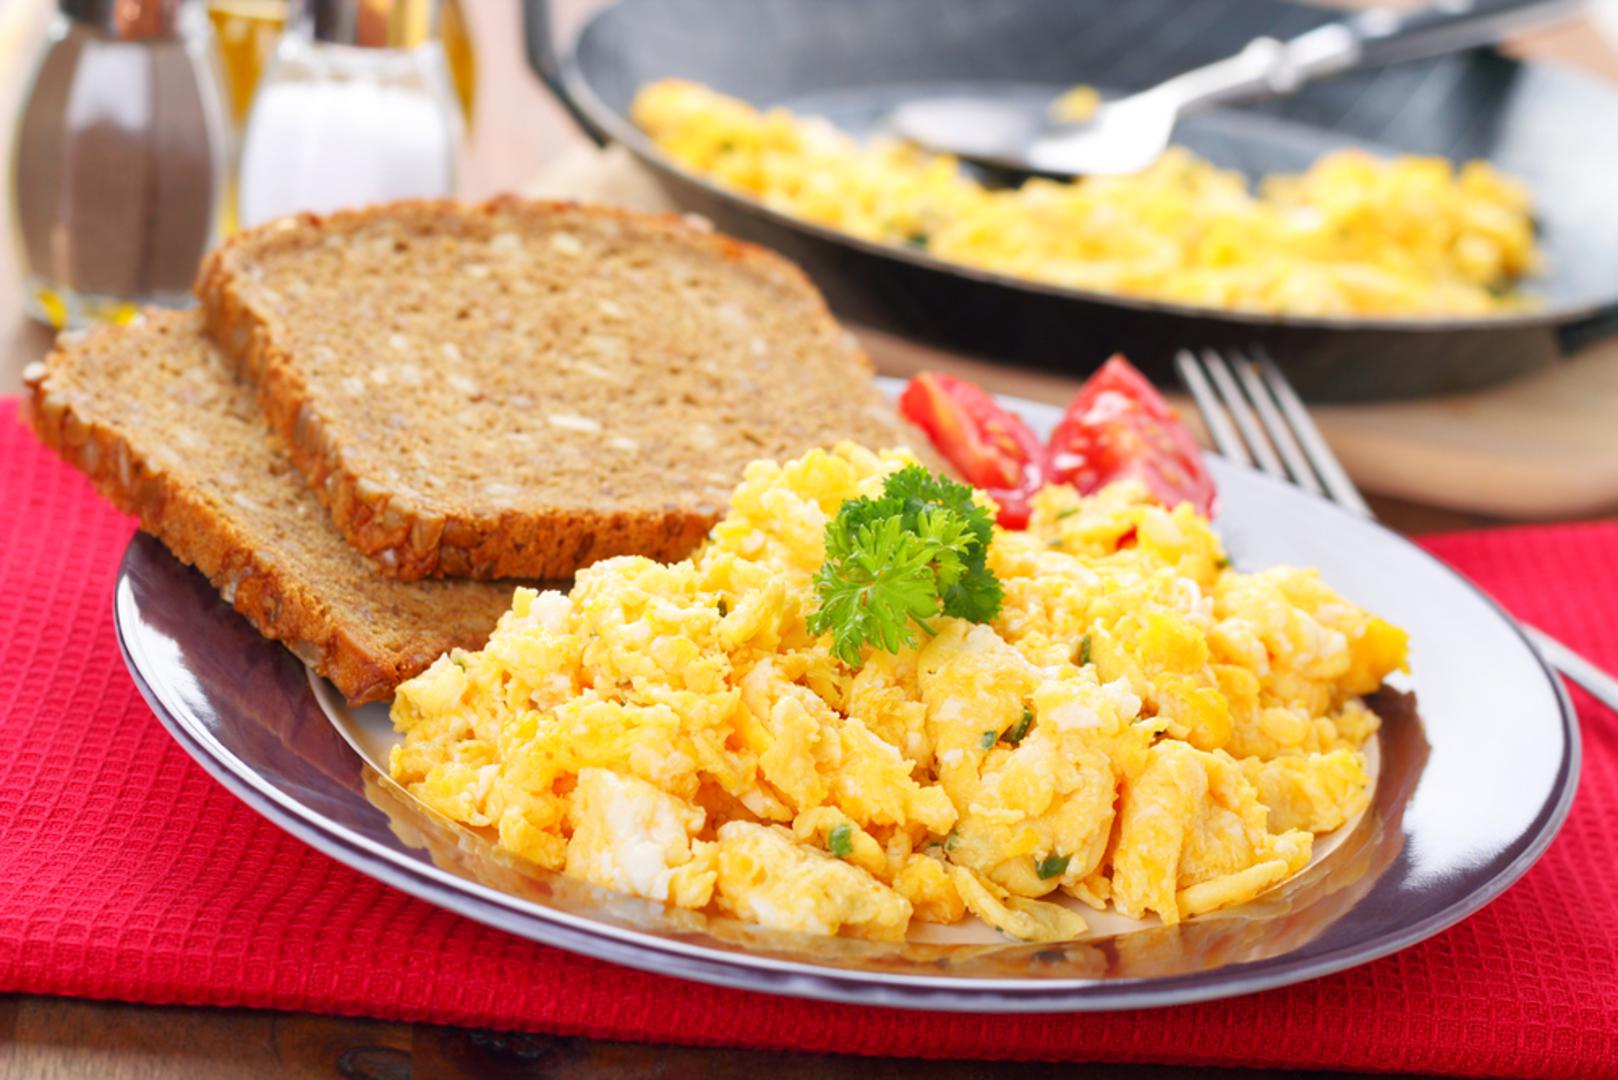 Jaja su ukusan, ali i zdravi izbor za doručak. Ovu namirnicu možete pripremati na više načina i to vam daje mnogo mogućnosti za kreaciju svojih obroka. 